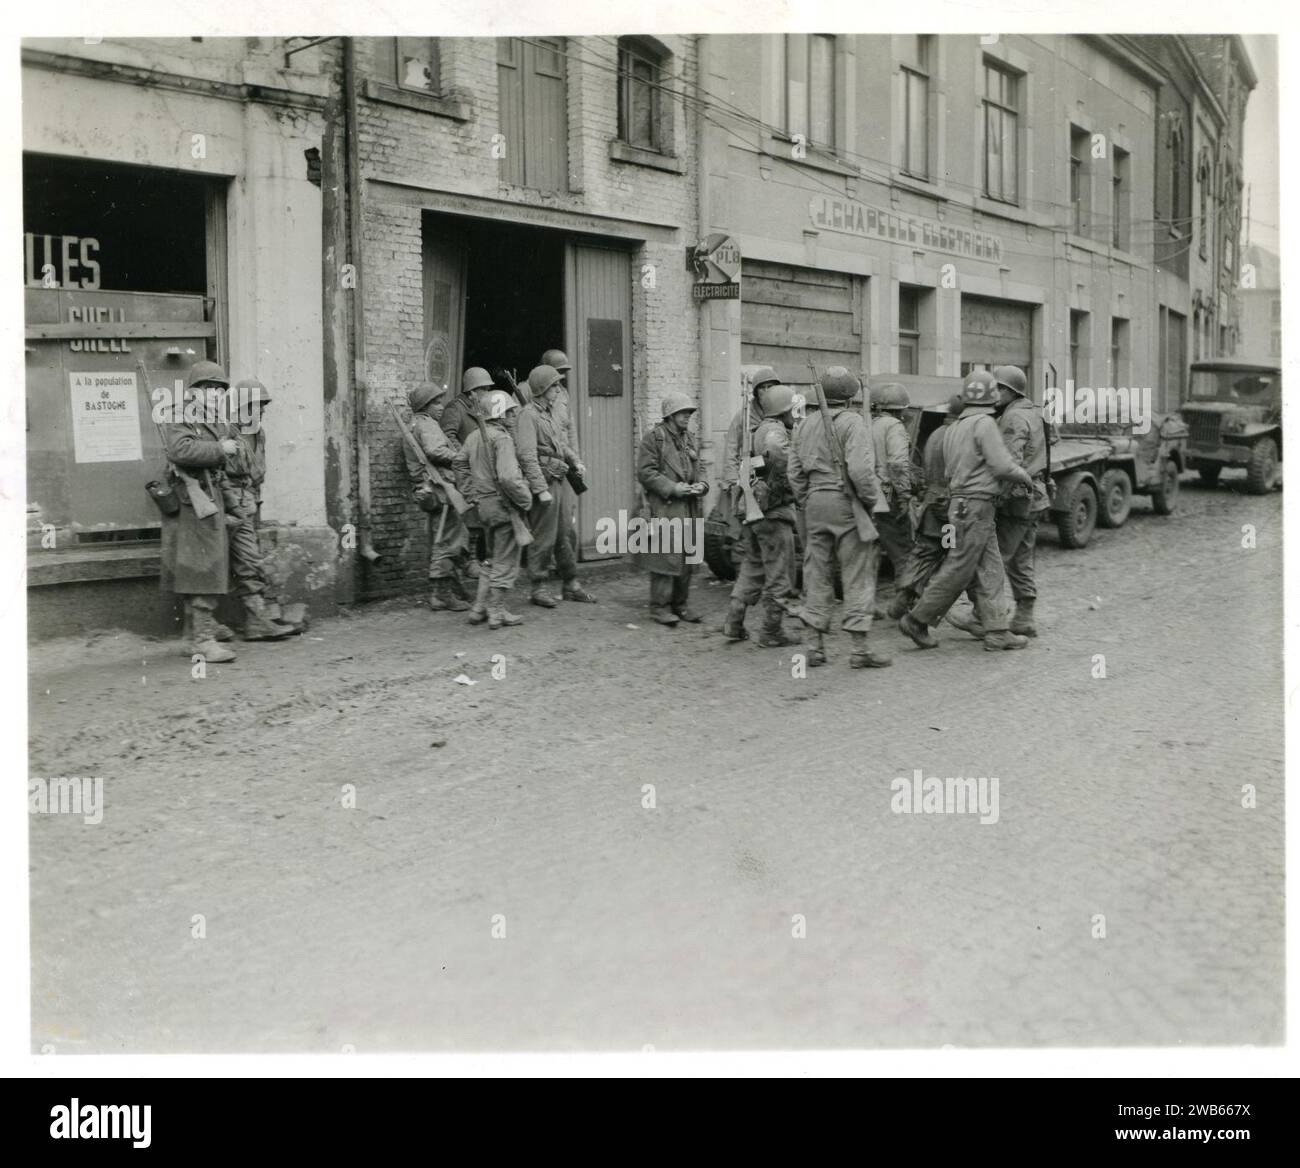 111-SC-329951 - i fanti del 1° esercito degli Stati Uniti si riuniscono a Bastogne, in Belgio, per raggrupparsi dopo essere stati tagliati fuori dal loro reggimento dai tedeschi nel tentativo nemico in quest'area. 110 Regt, 28th LNE Div FUSA Bastogne, Belgio. Foto Stock